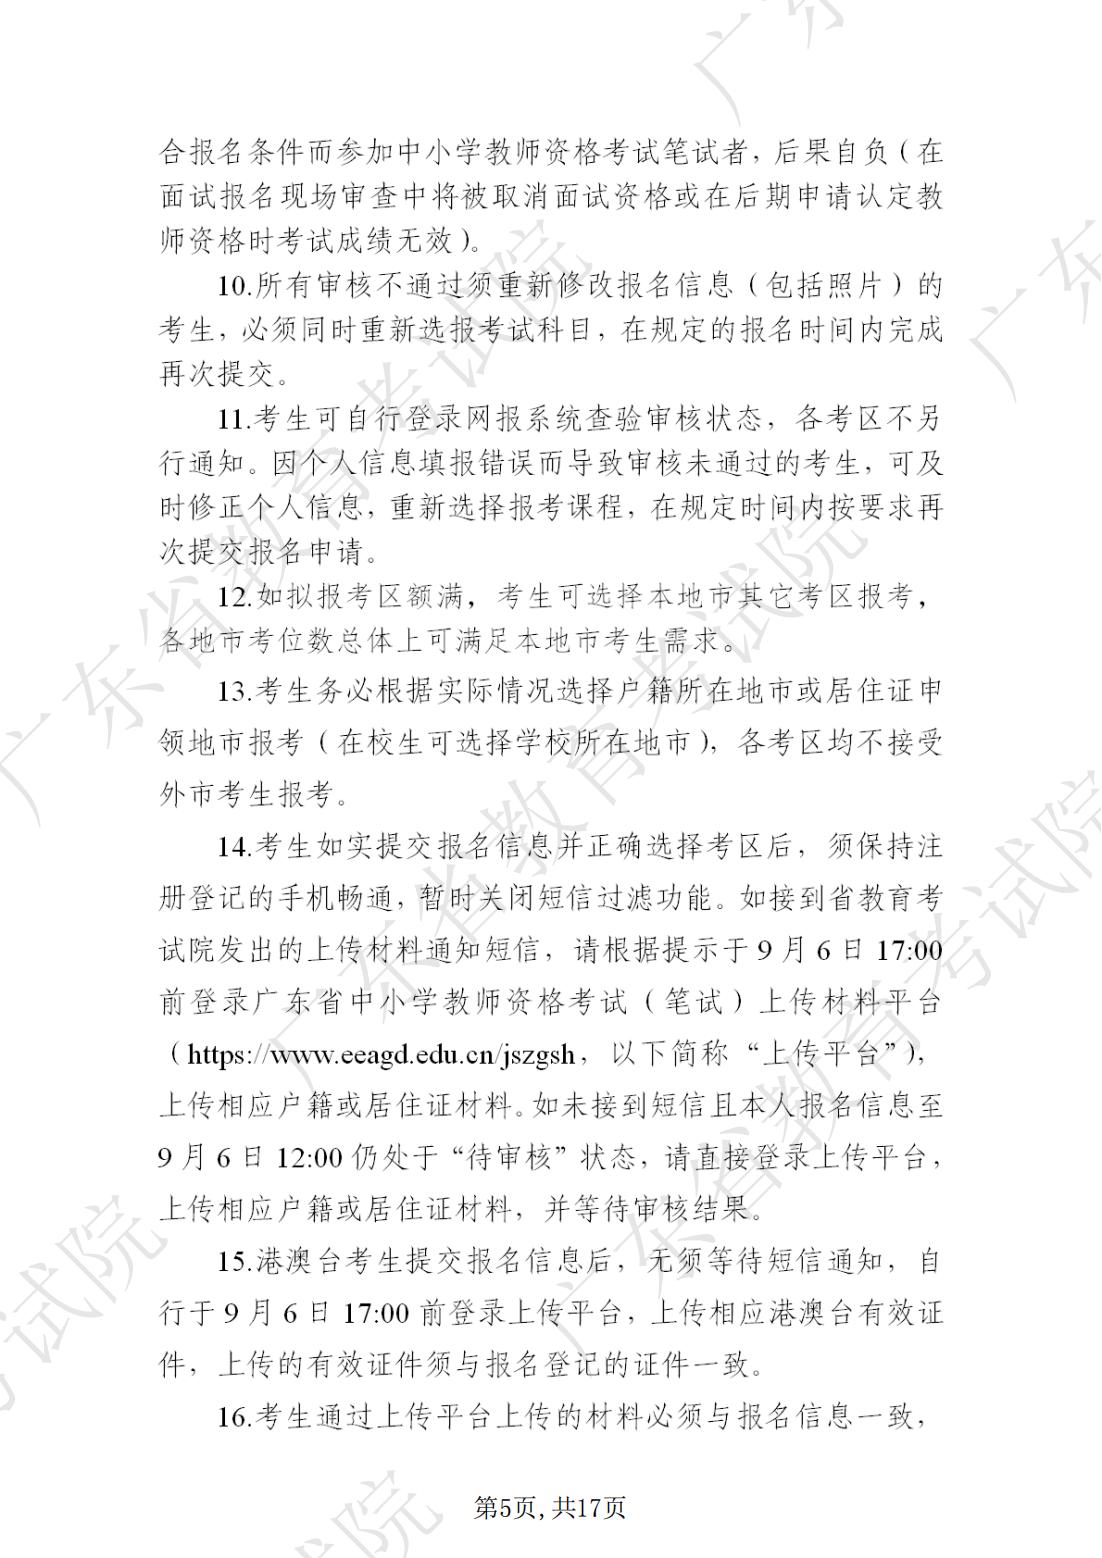 2022-08-18  关于发布《广东省2022年下半年中小学教师资格考试笔试通告》的请示_04.jpg